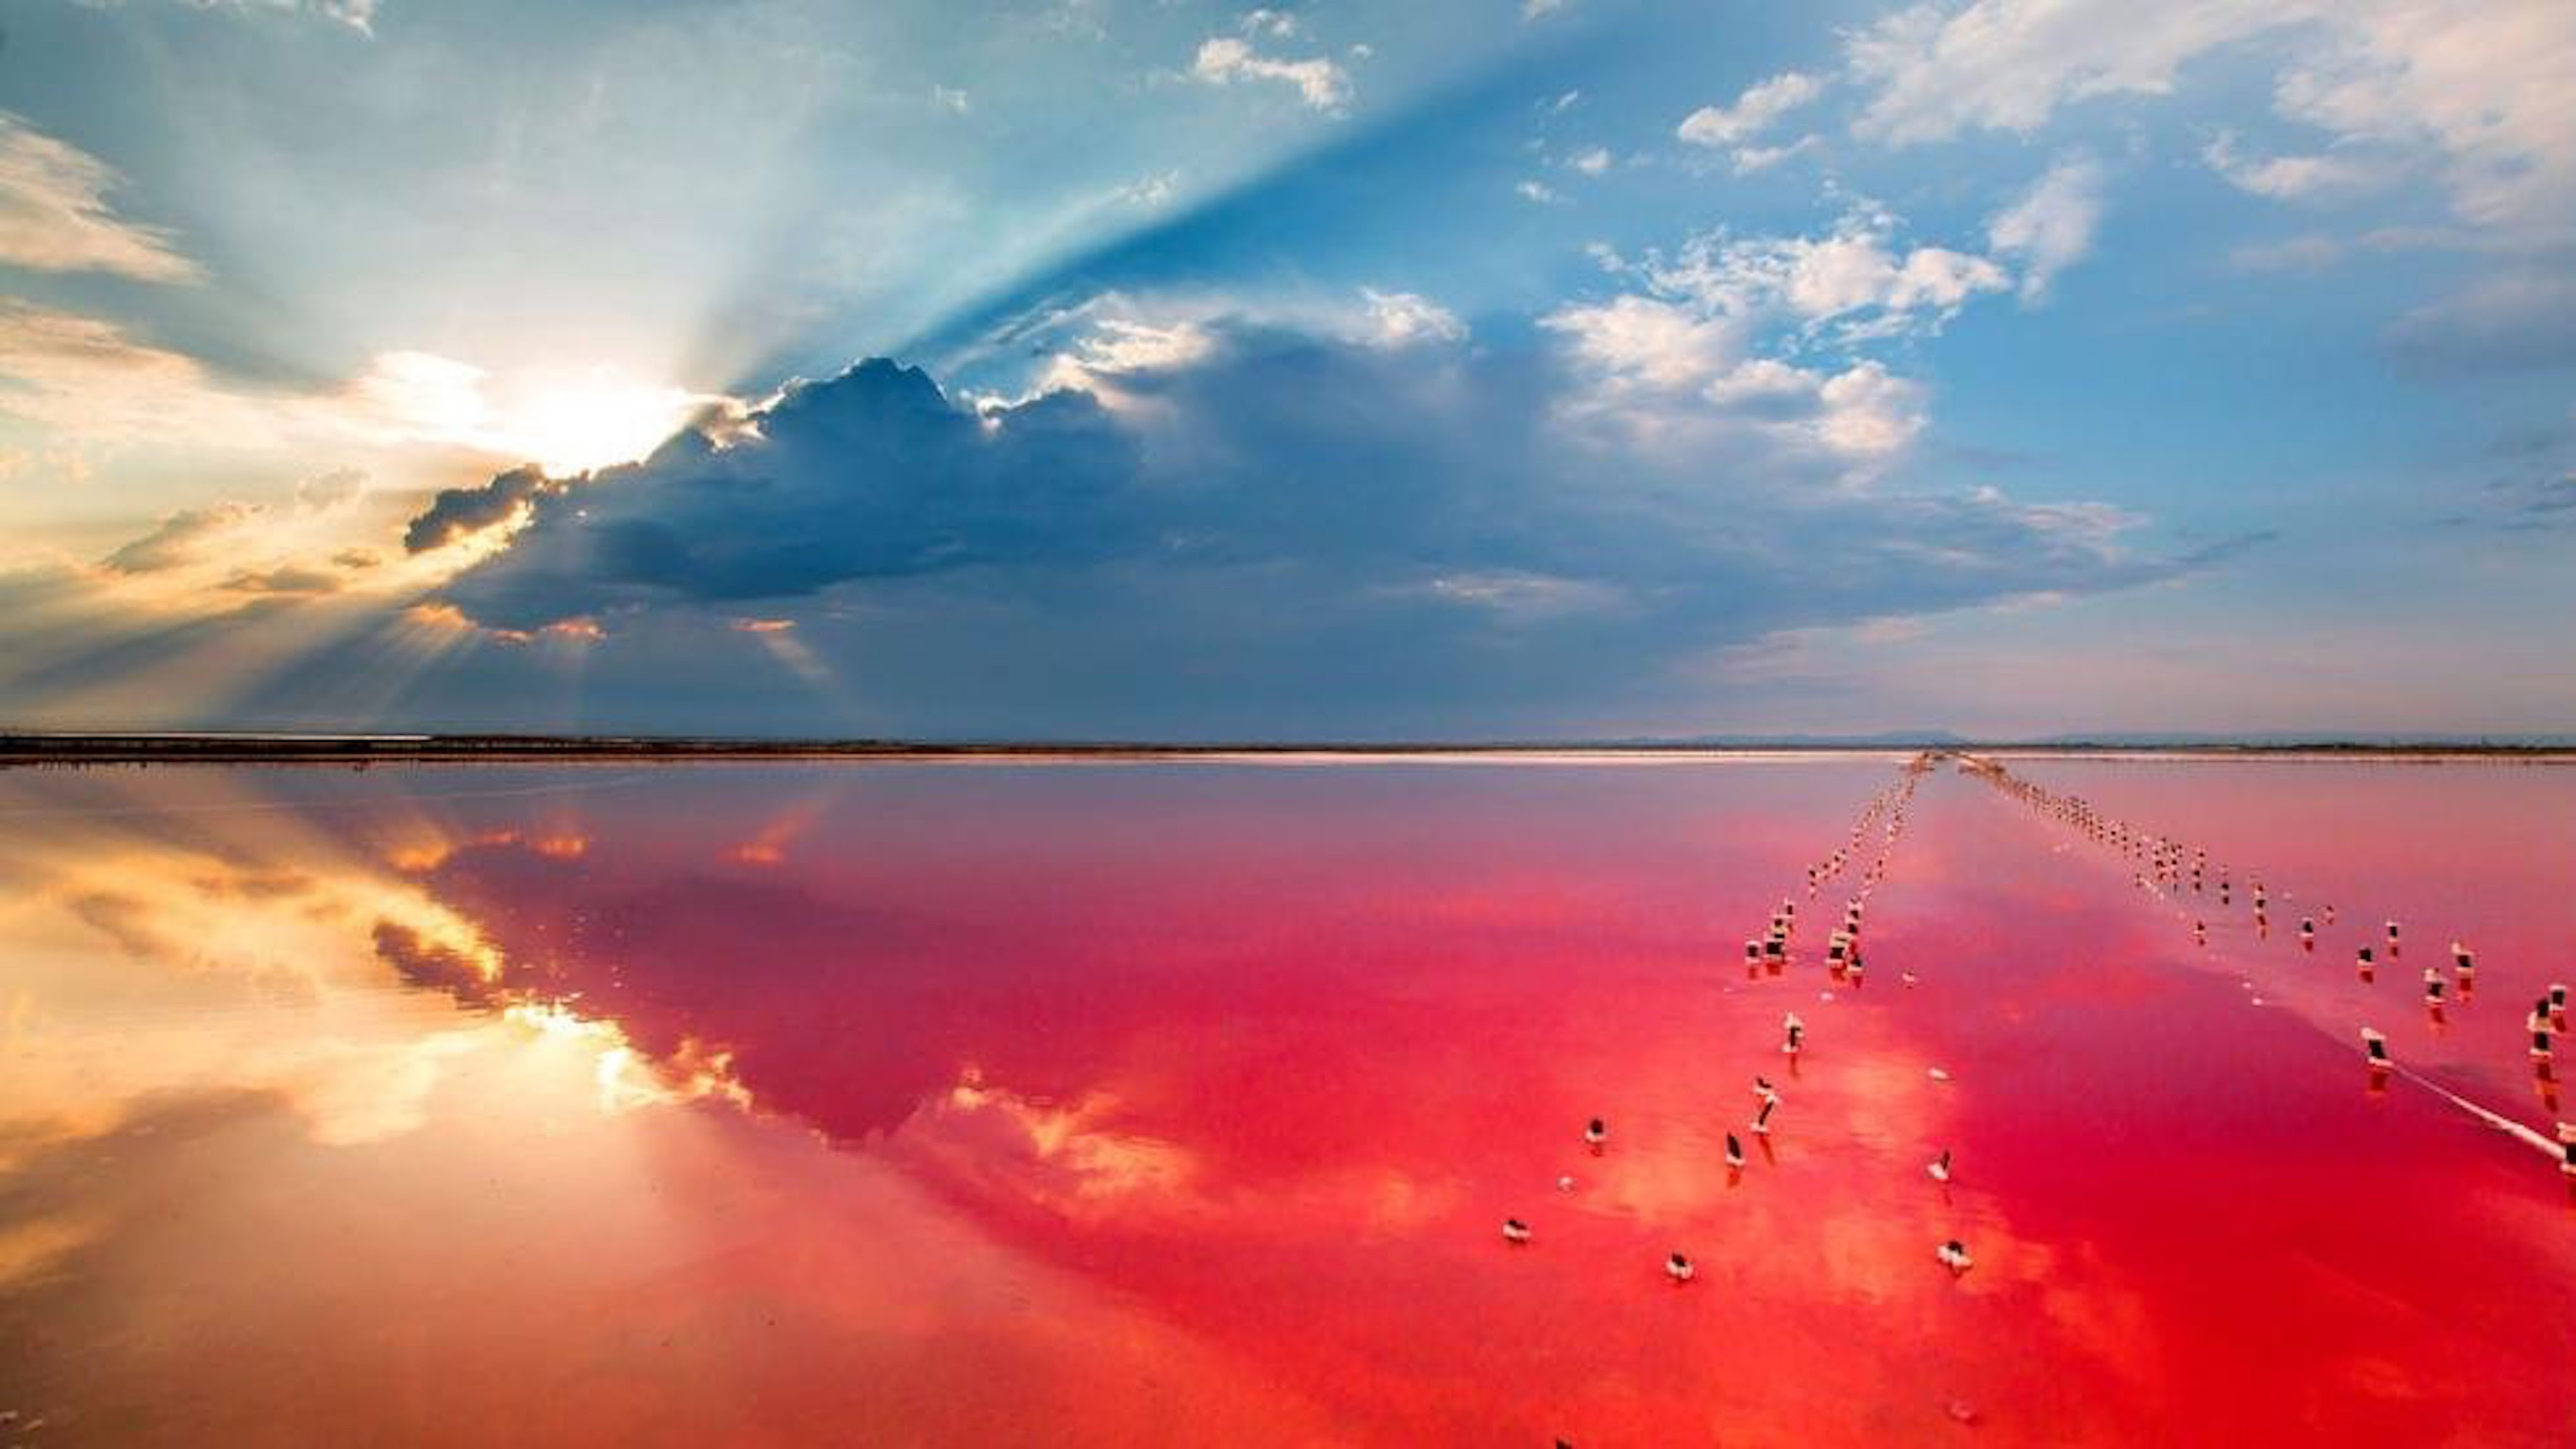 Este lago de Crimea, actualmente perteneciente a Rusia, es conocido por su mal olor característico, pero su barro posee cualidades terapéuticas